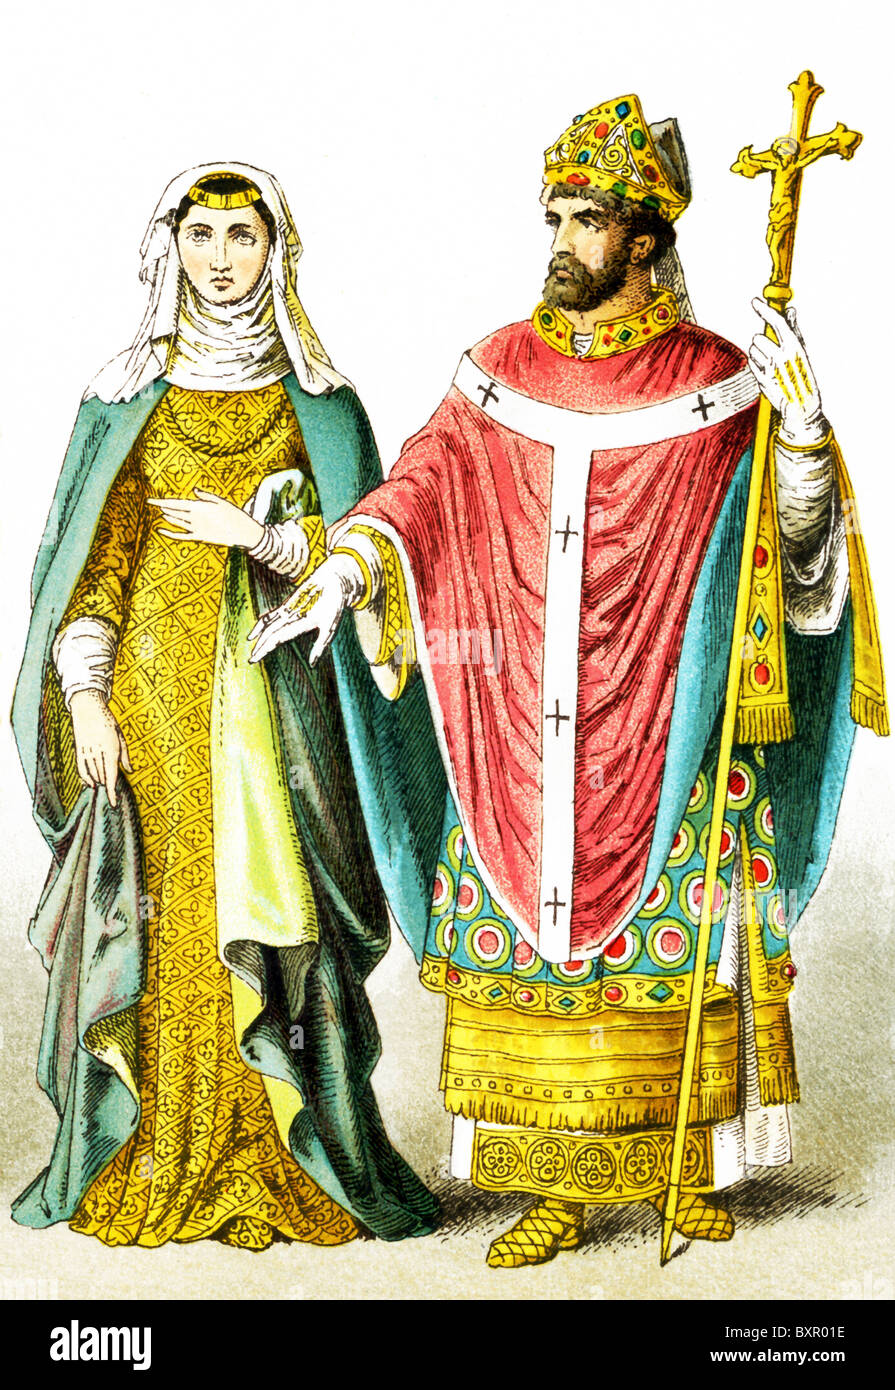 Le figure qui rappresentate sono una signora inglese di rango e un vescovo inglese intorno A.D. 1200. Foto Stock